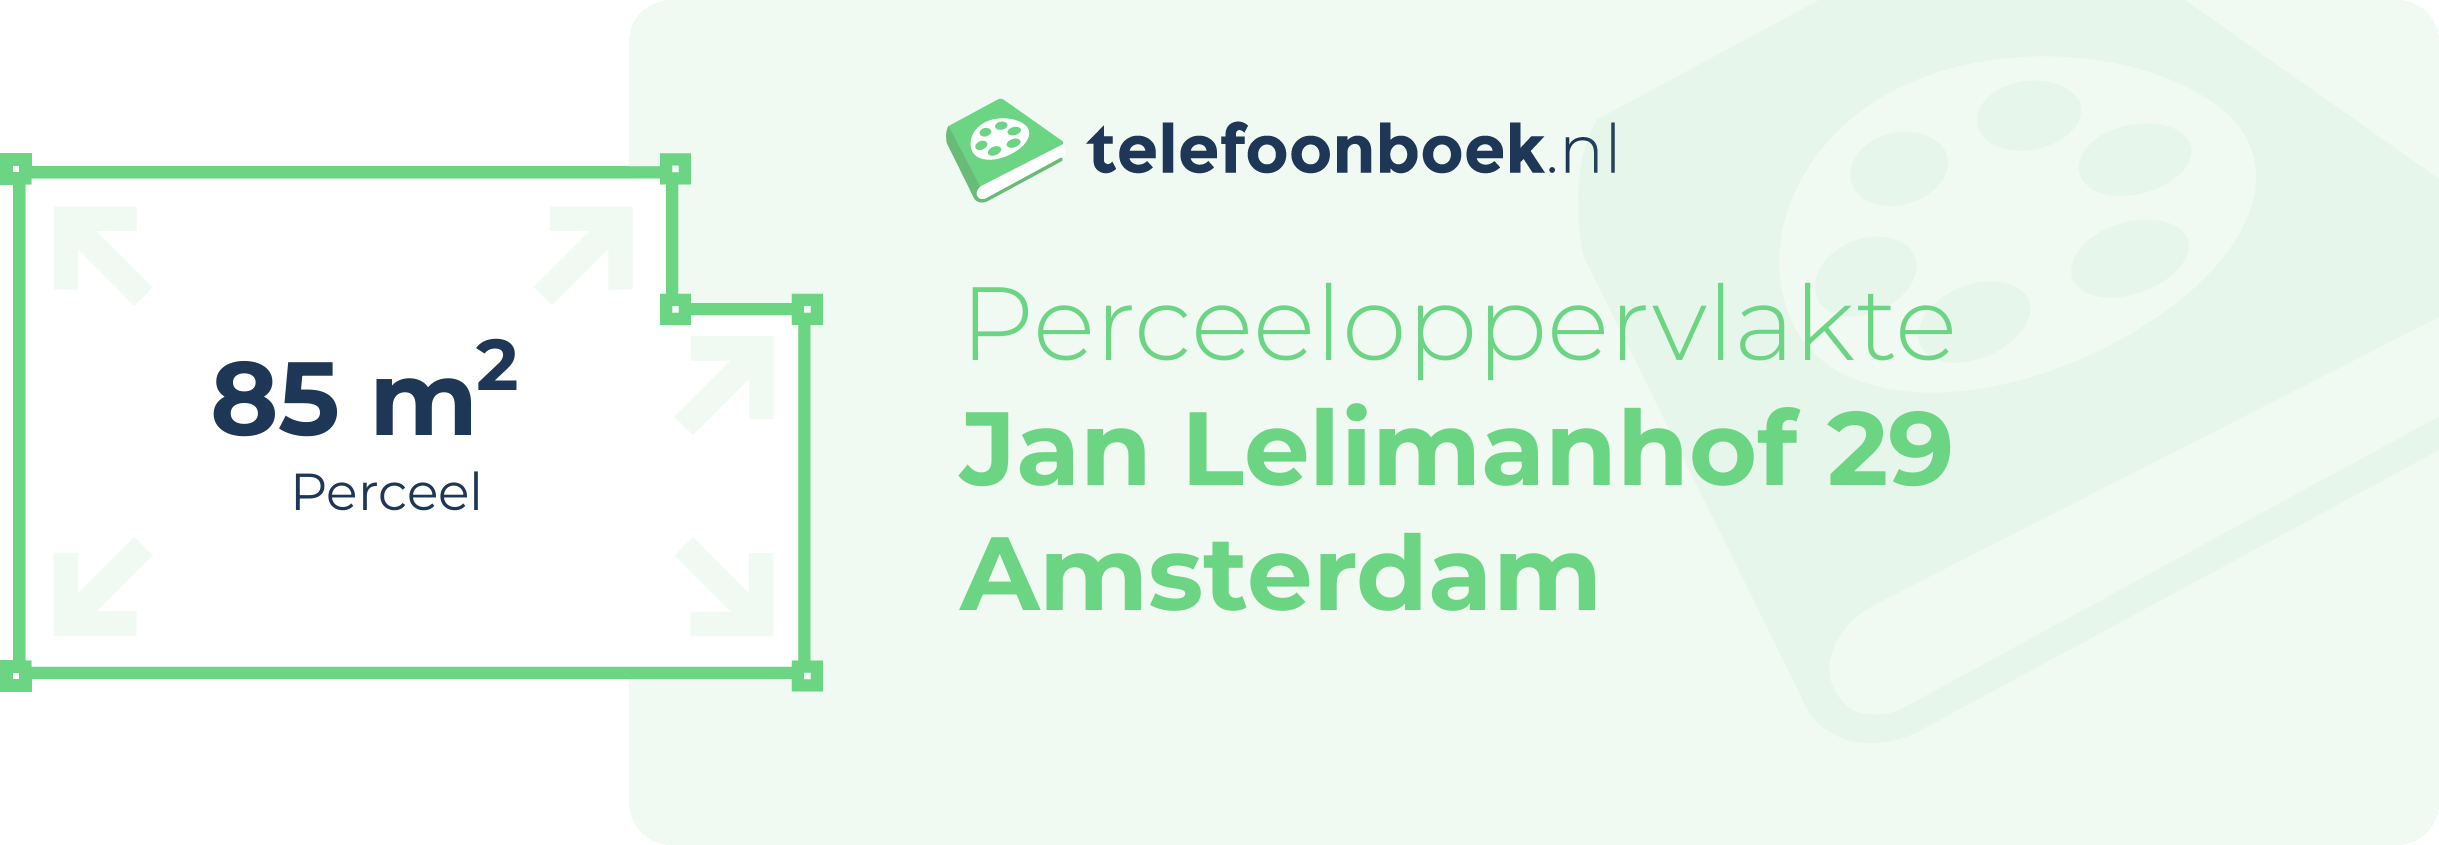 Perceeloppervlakte Jan Lelimanhof 29 Amsterdam